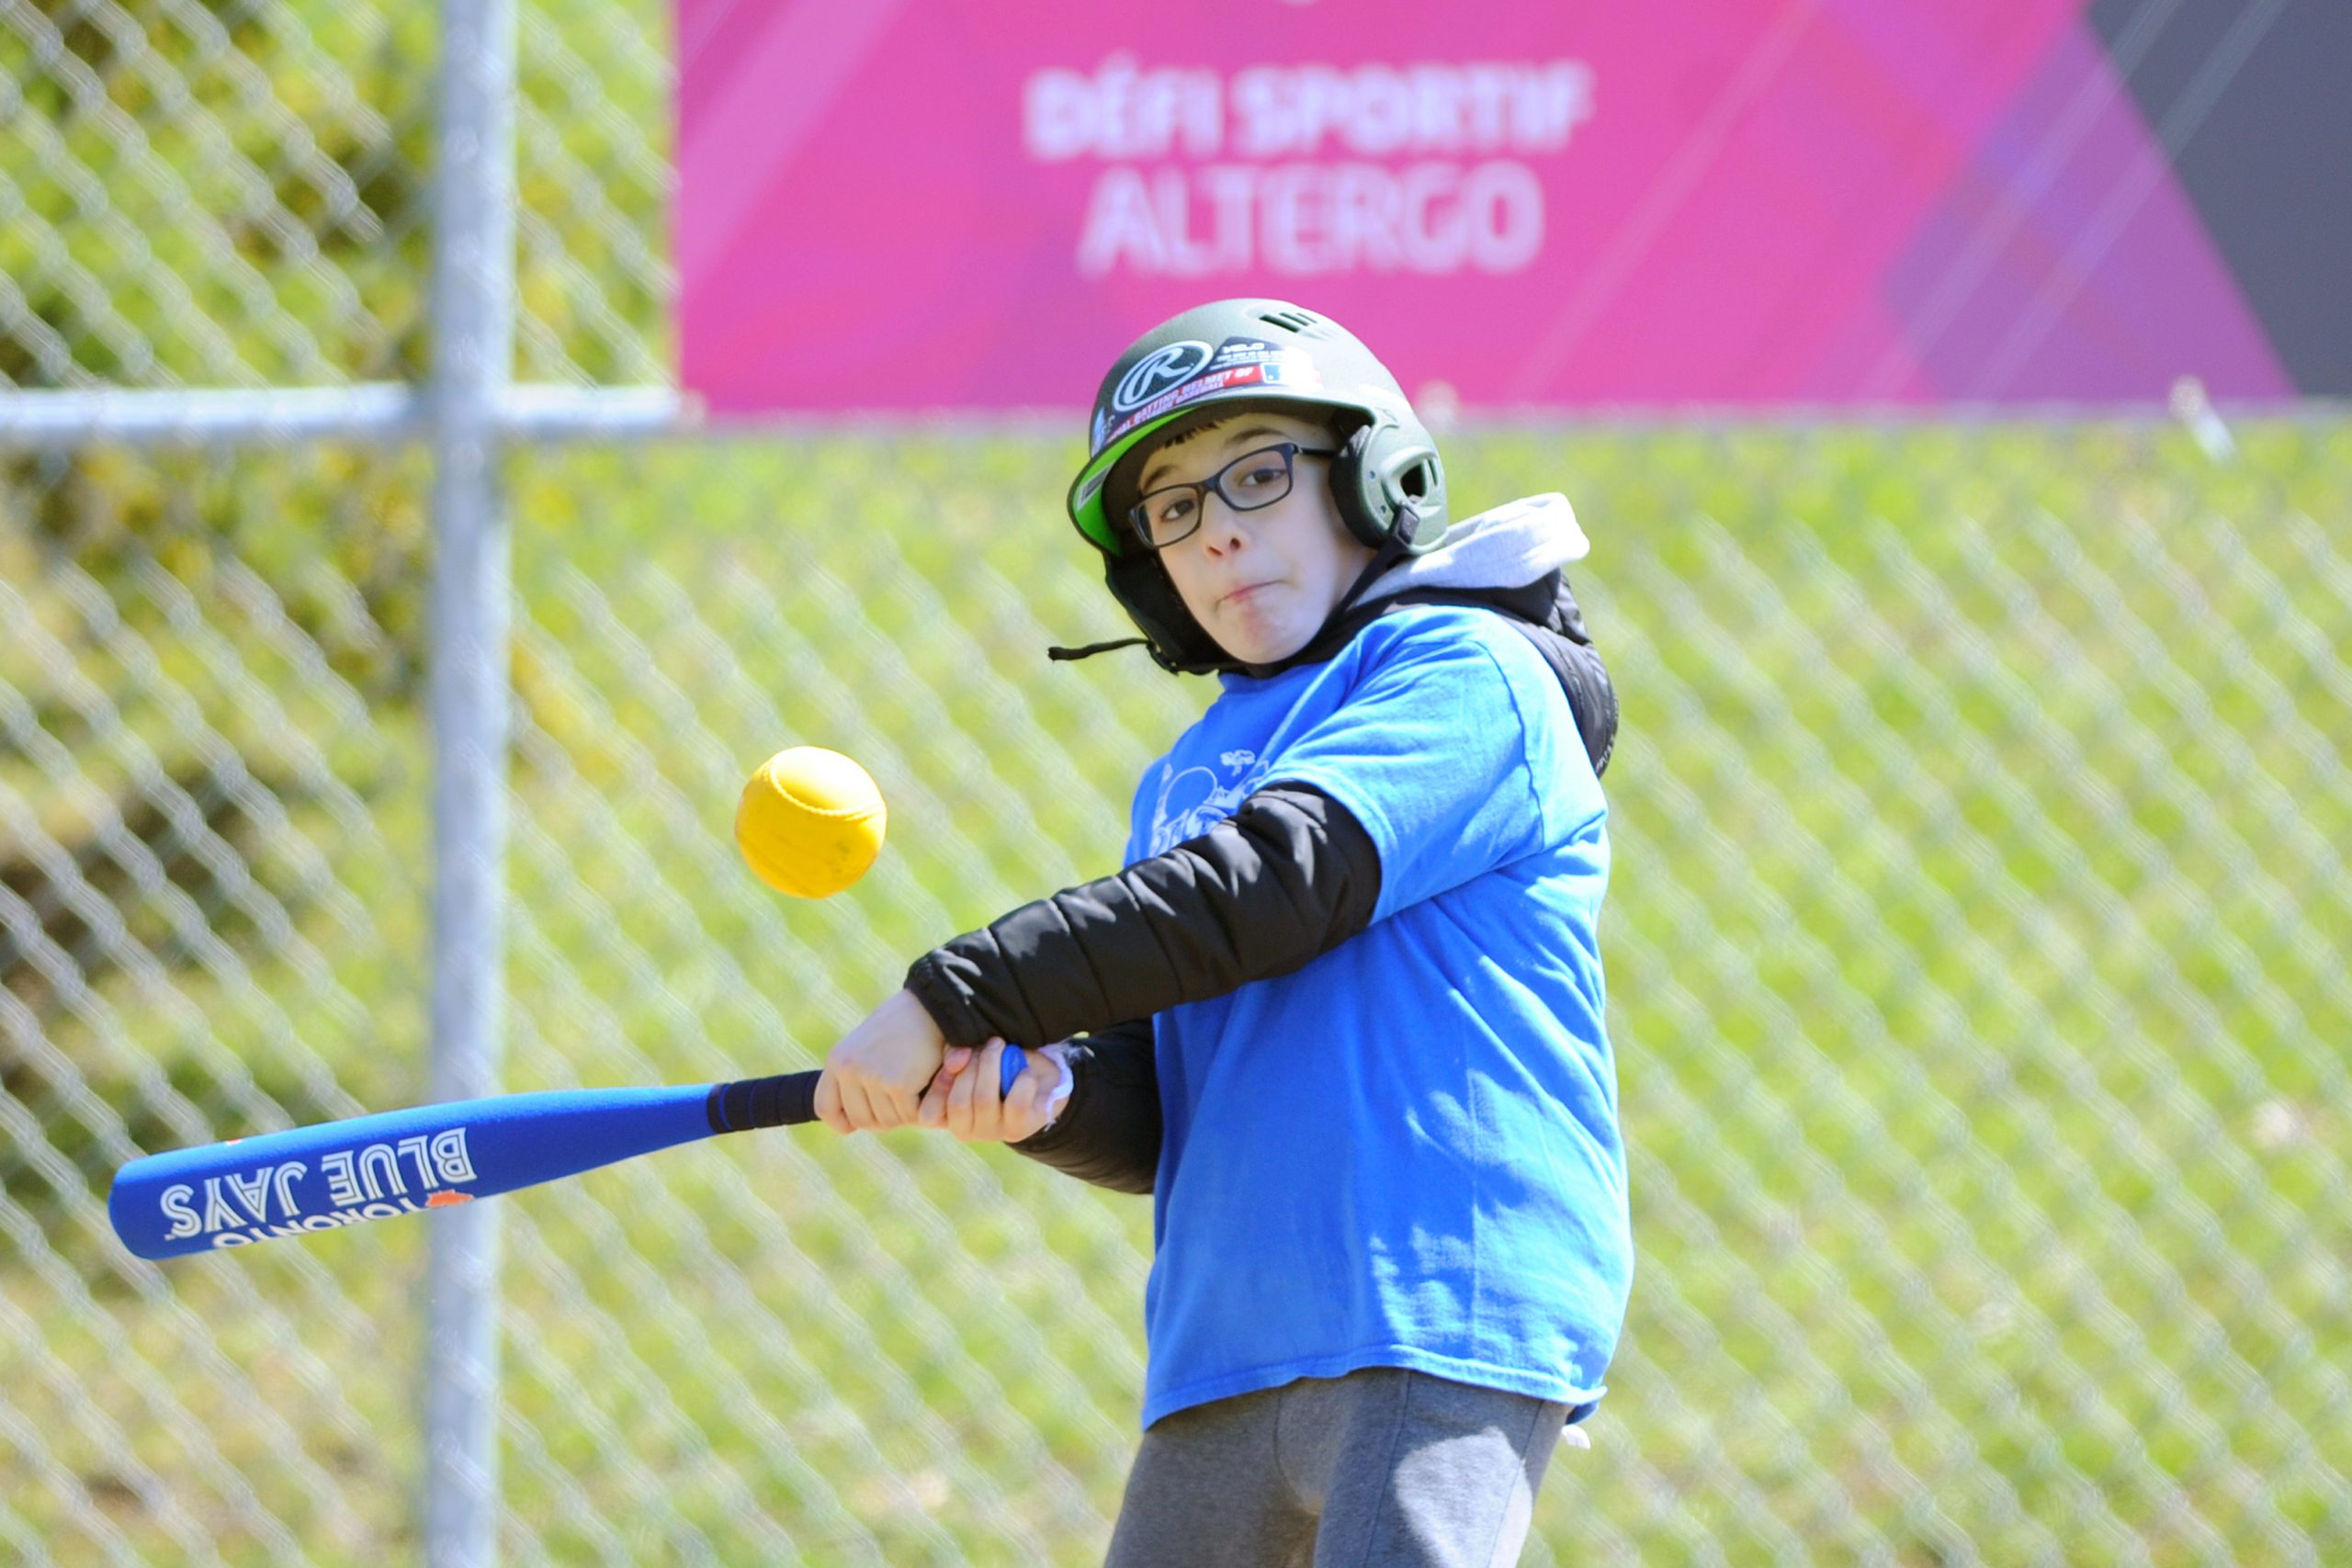 Description de l'image : Au centre, un jeune joueur de baseball s'apprête à frapper la balle jaune qui est dans les airs devant lui.